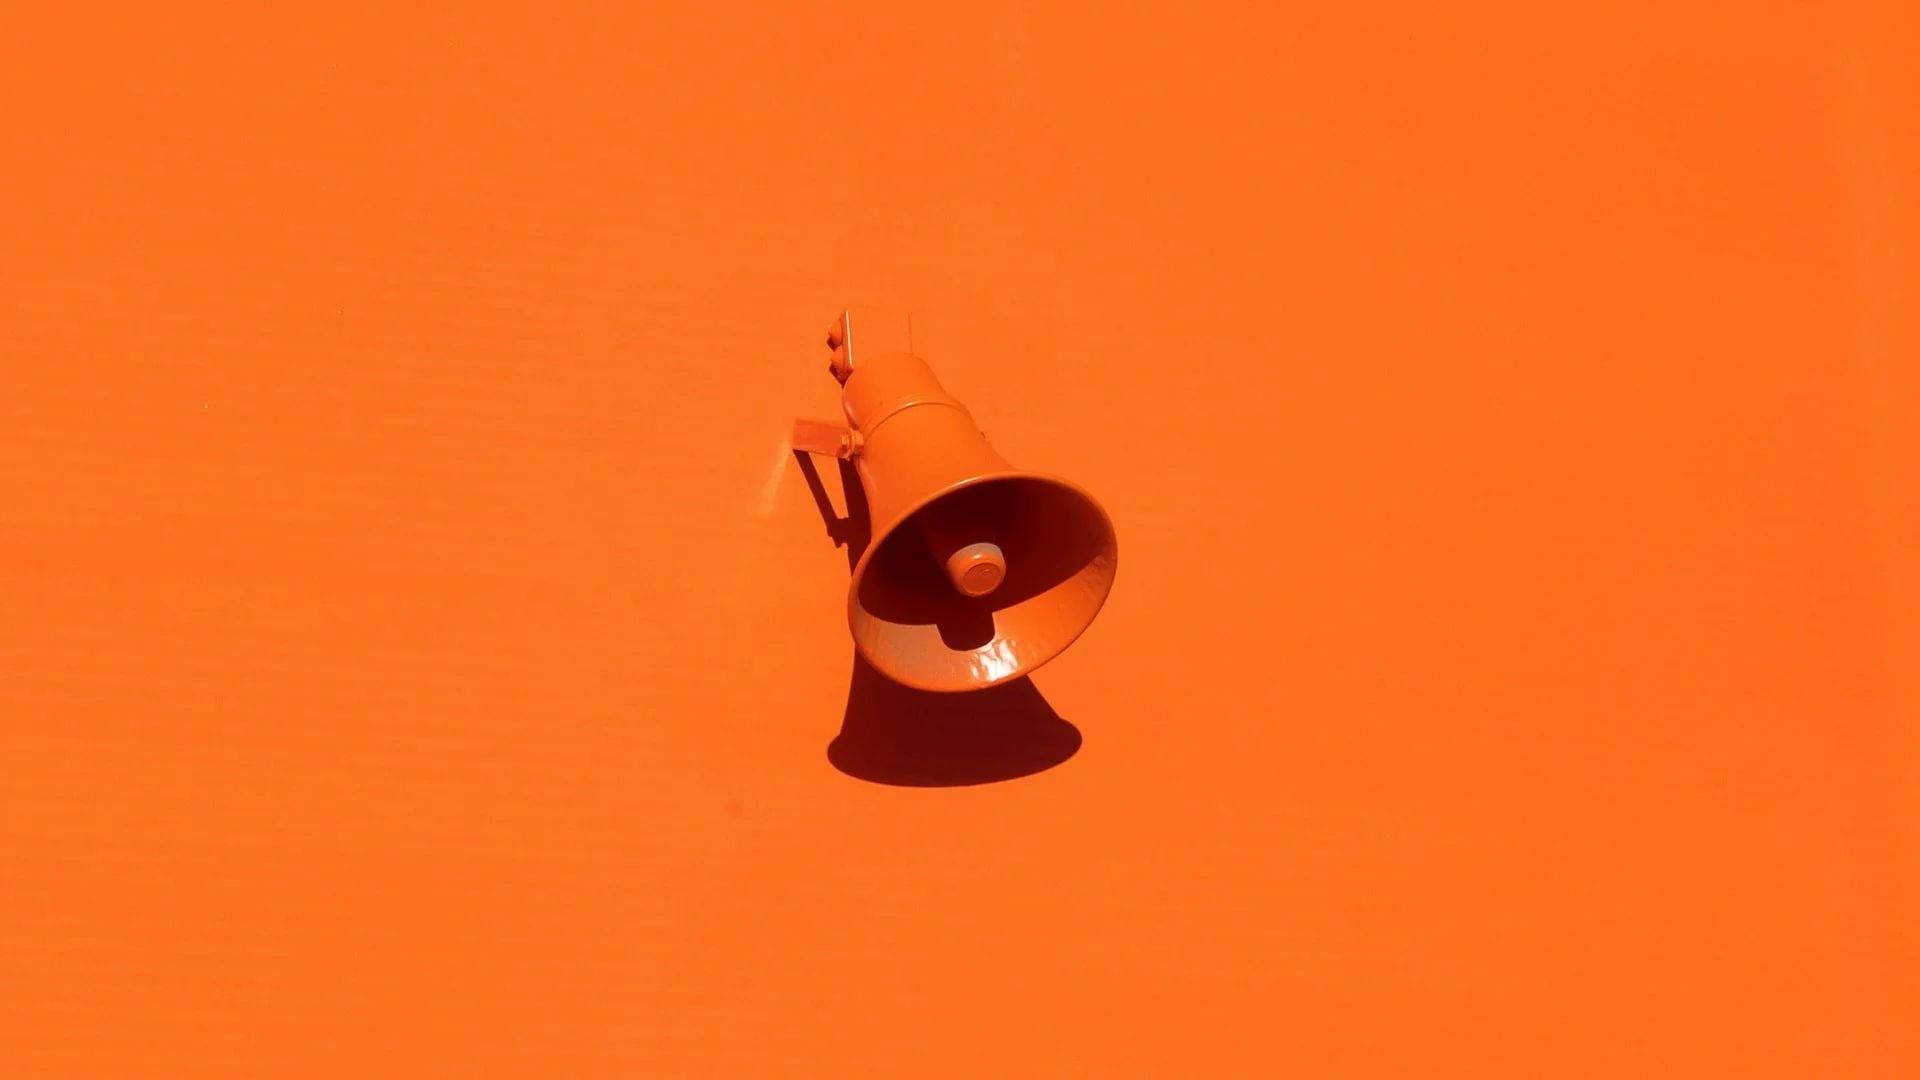 Megaphone On Orange Background